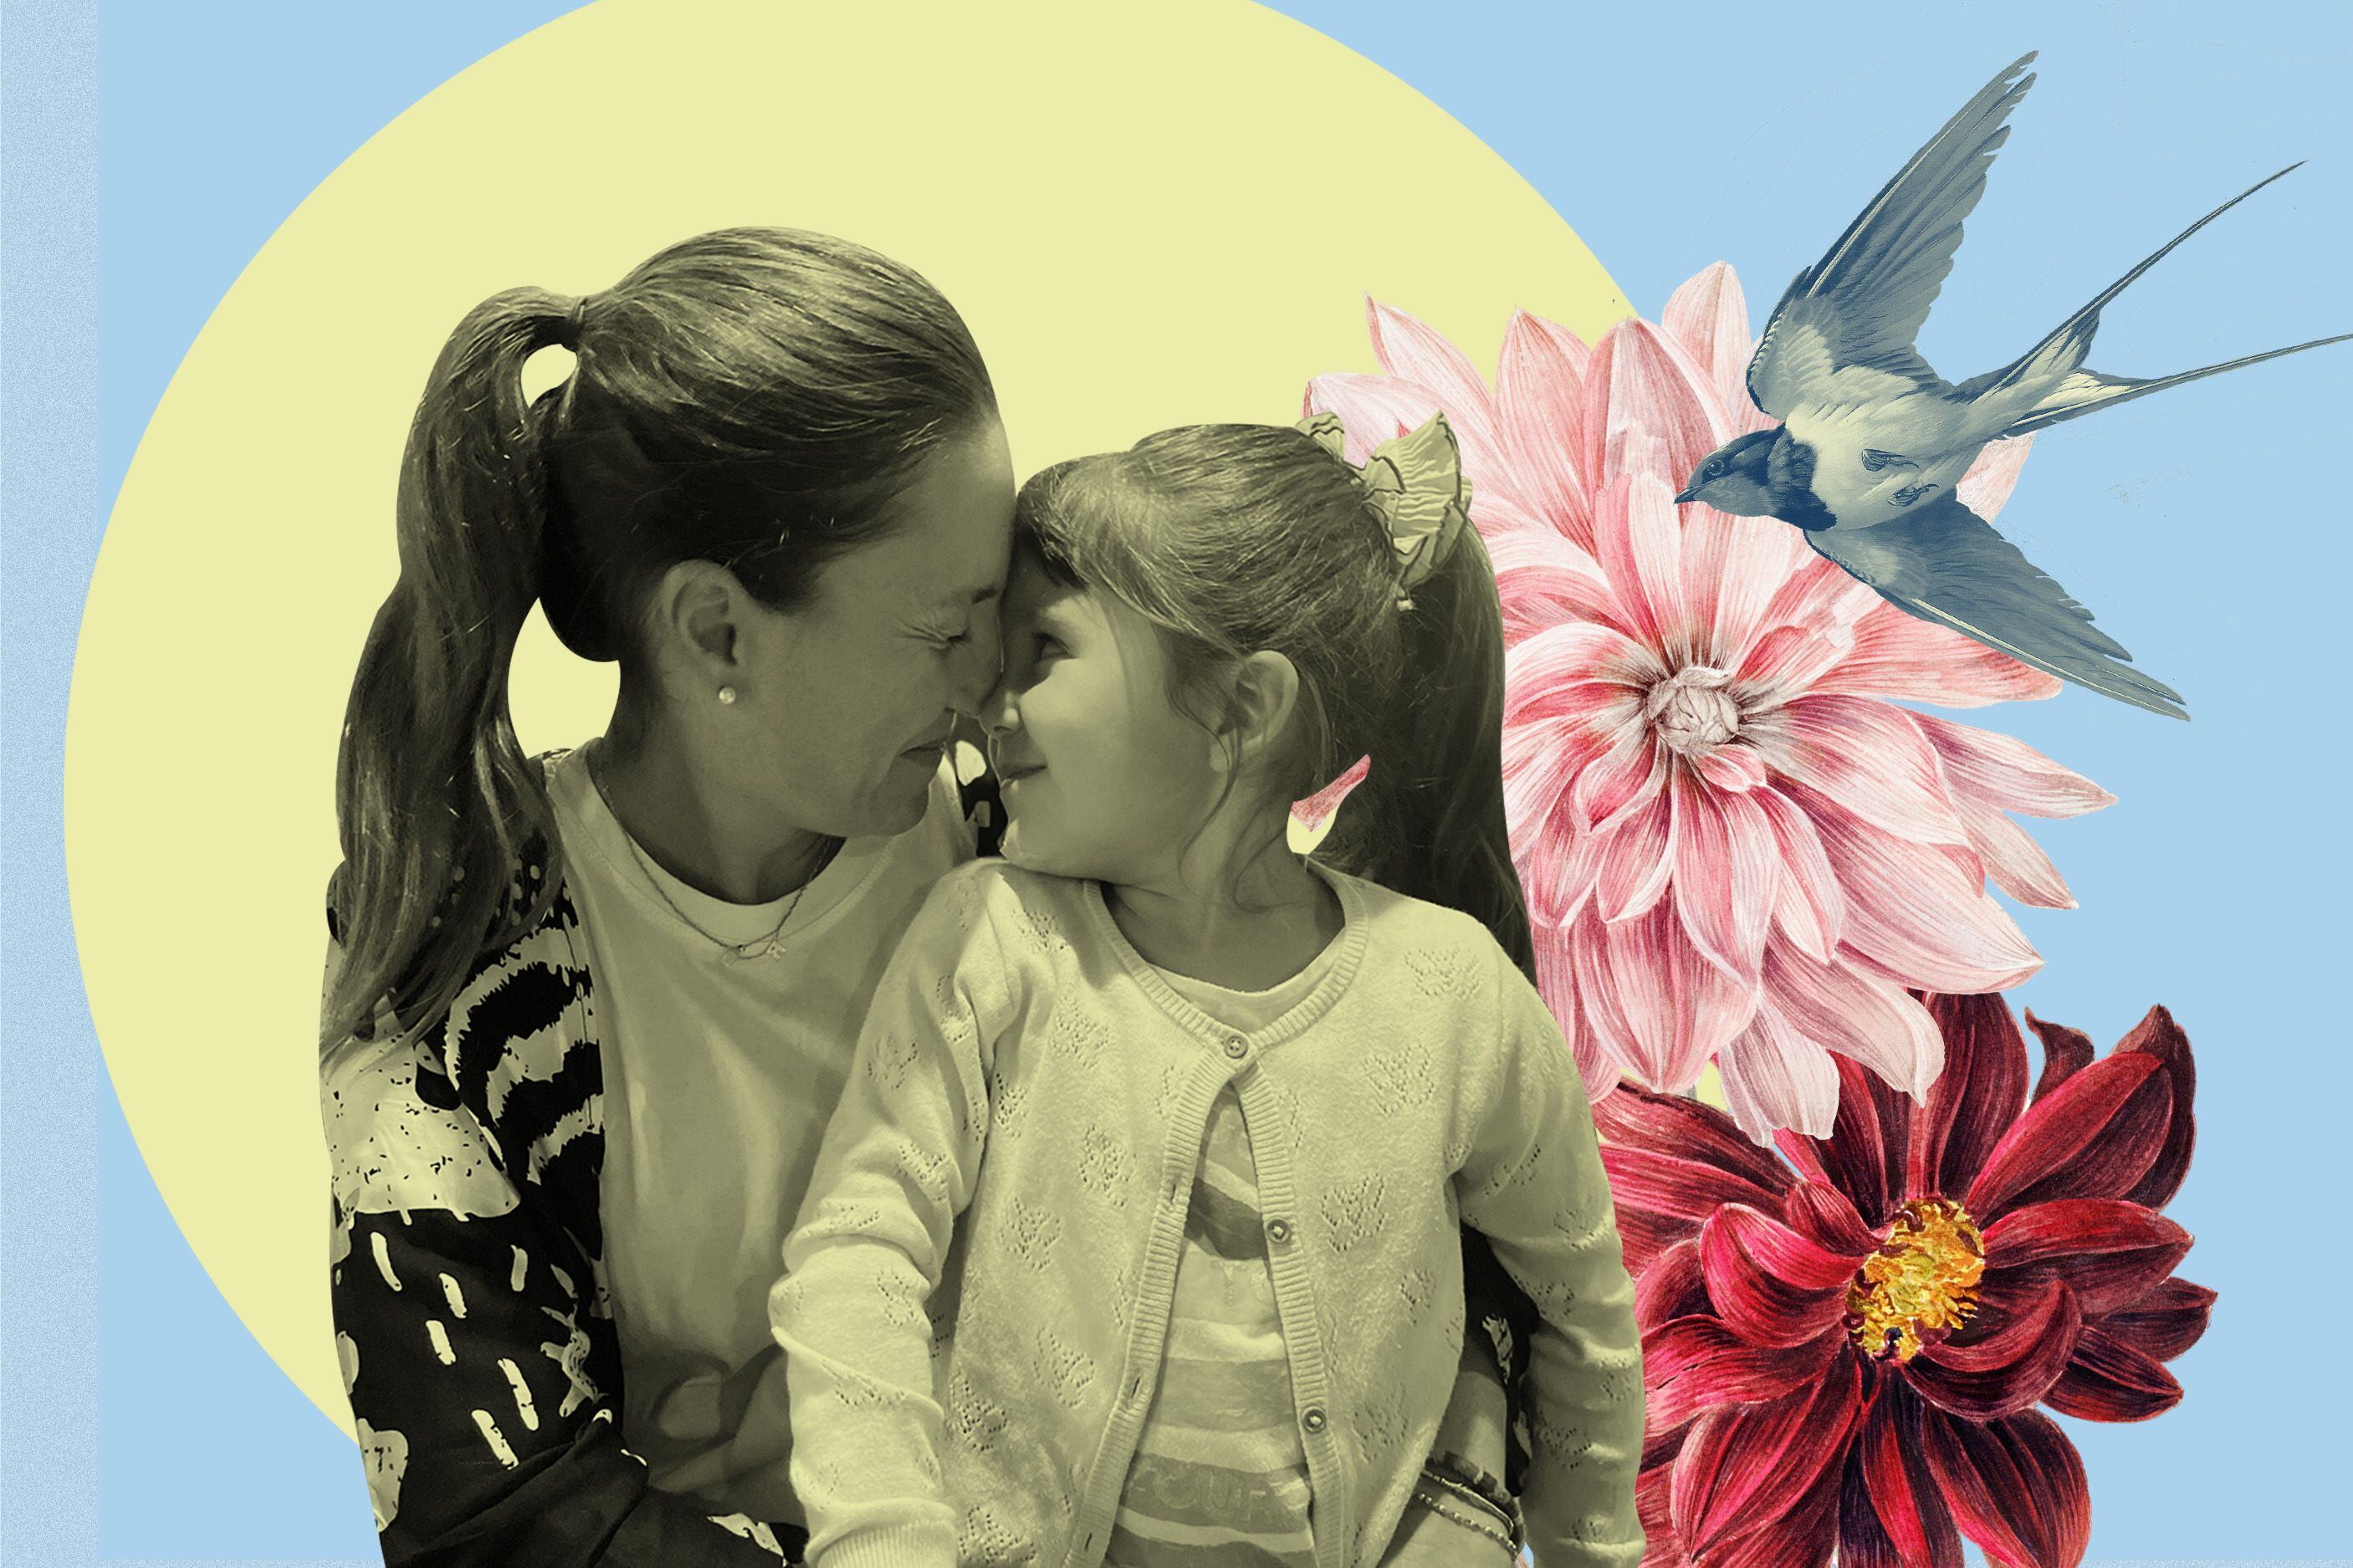 el cáncer, mi maternidad y yo: “quiero simplemente cumplir la promesa de llevar a mis hijas a dormir cada noche”